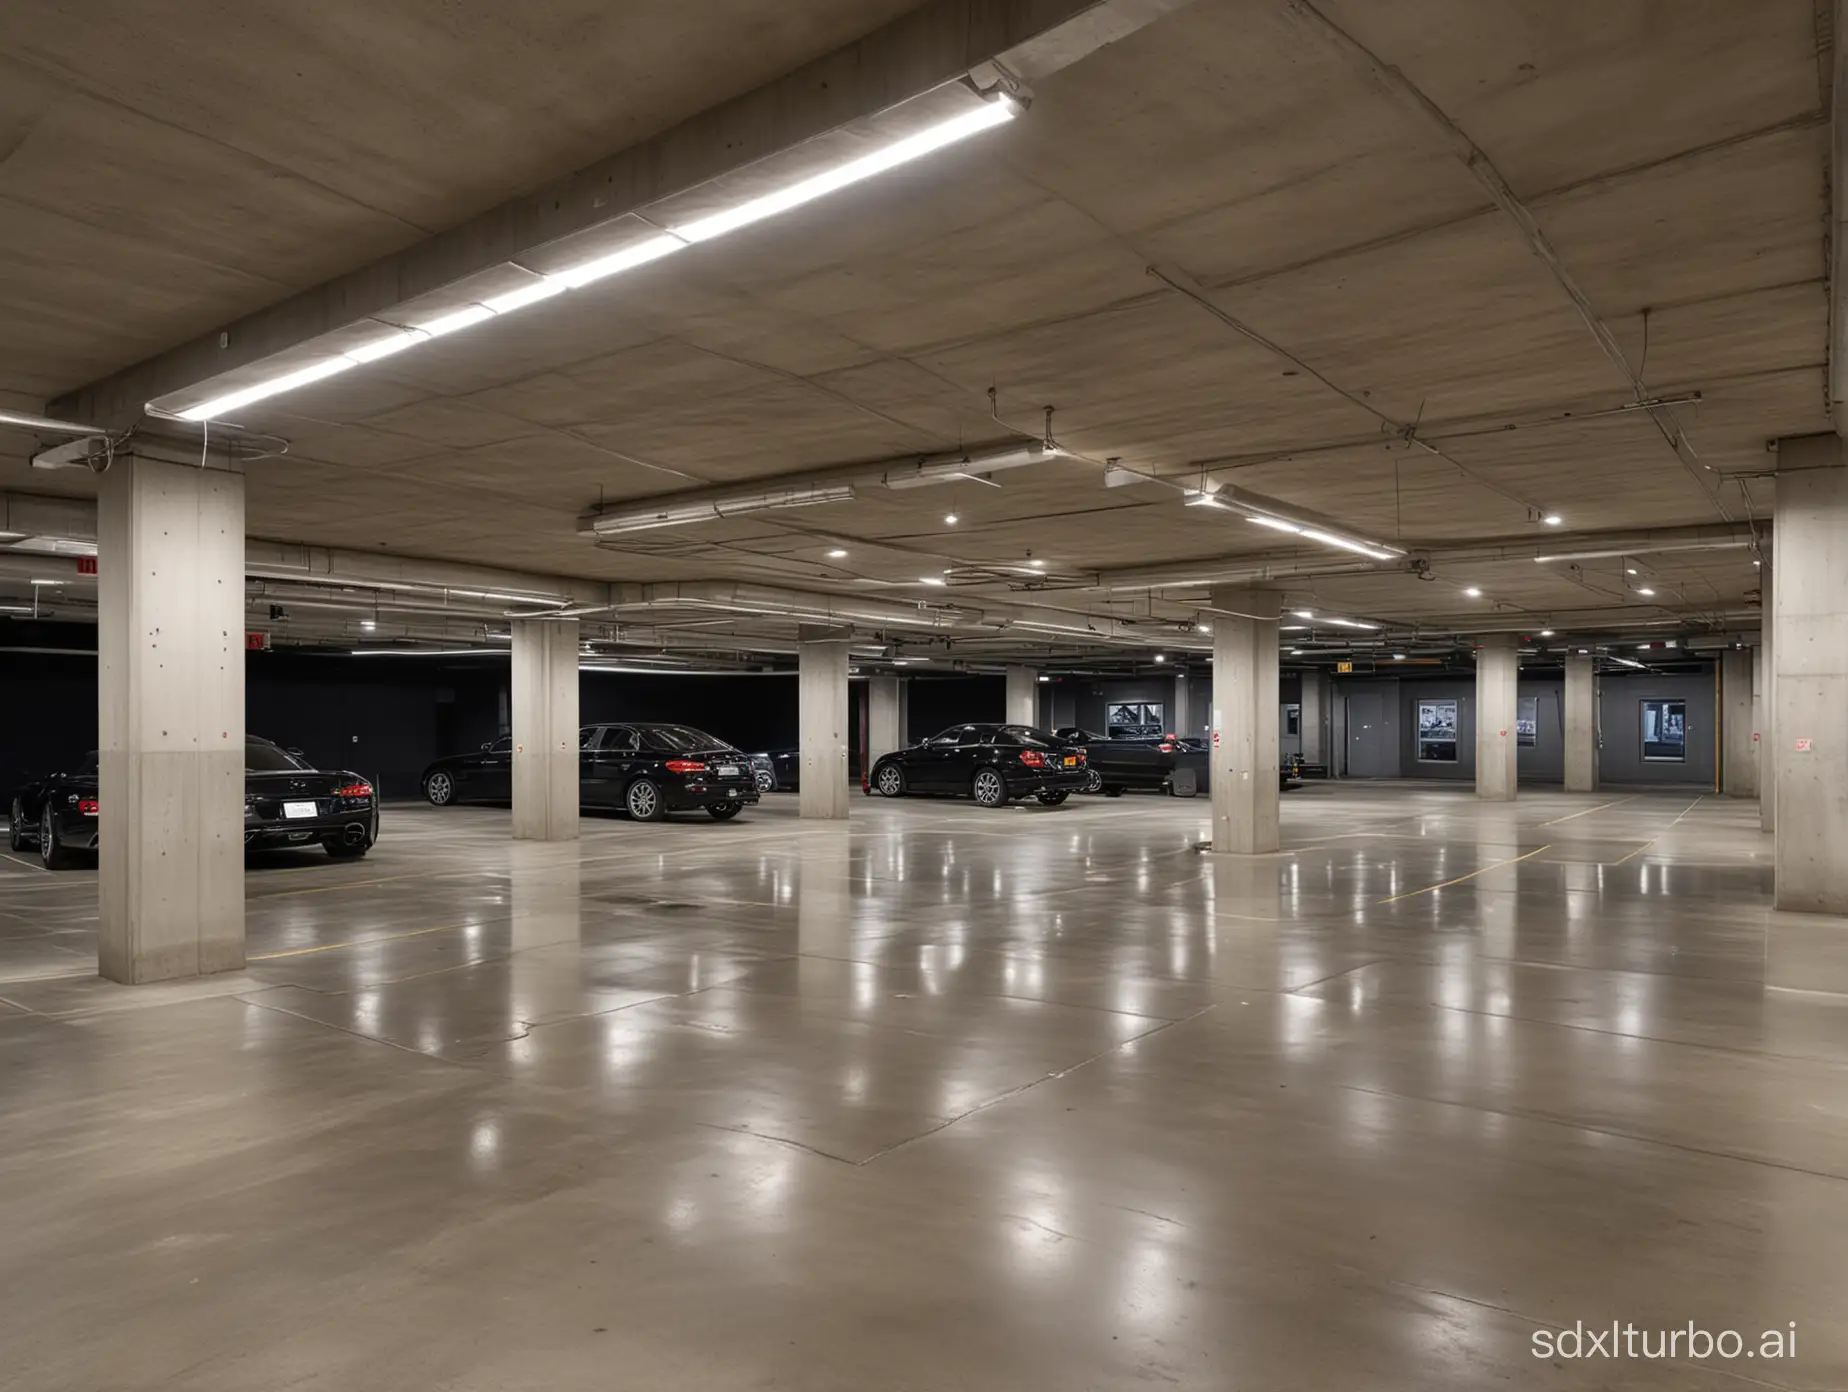 Luxury underground parking lot